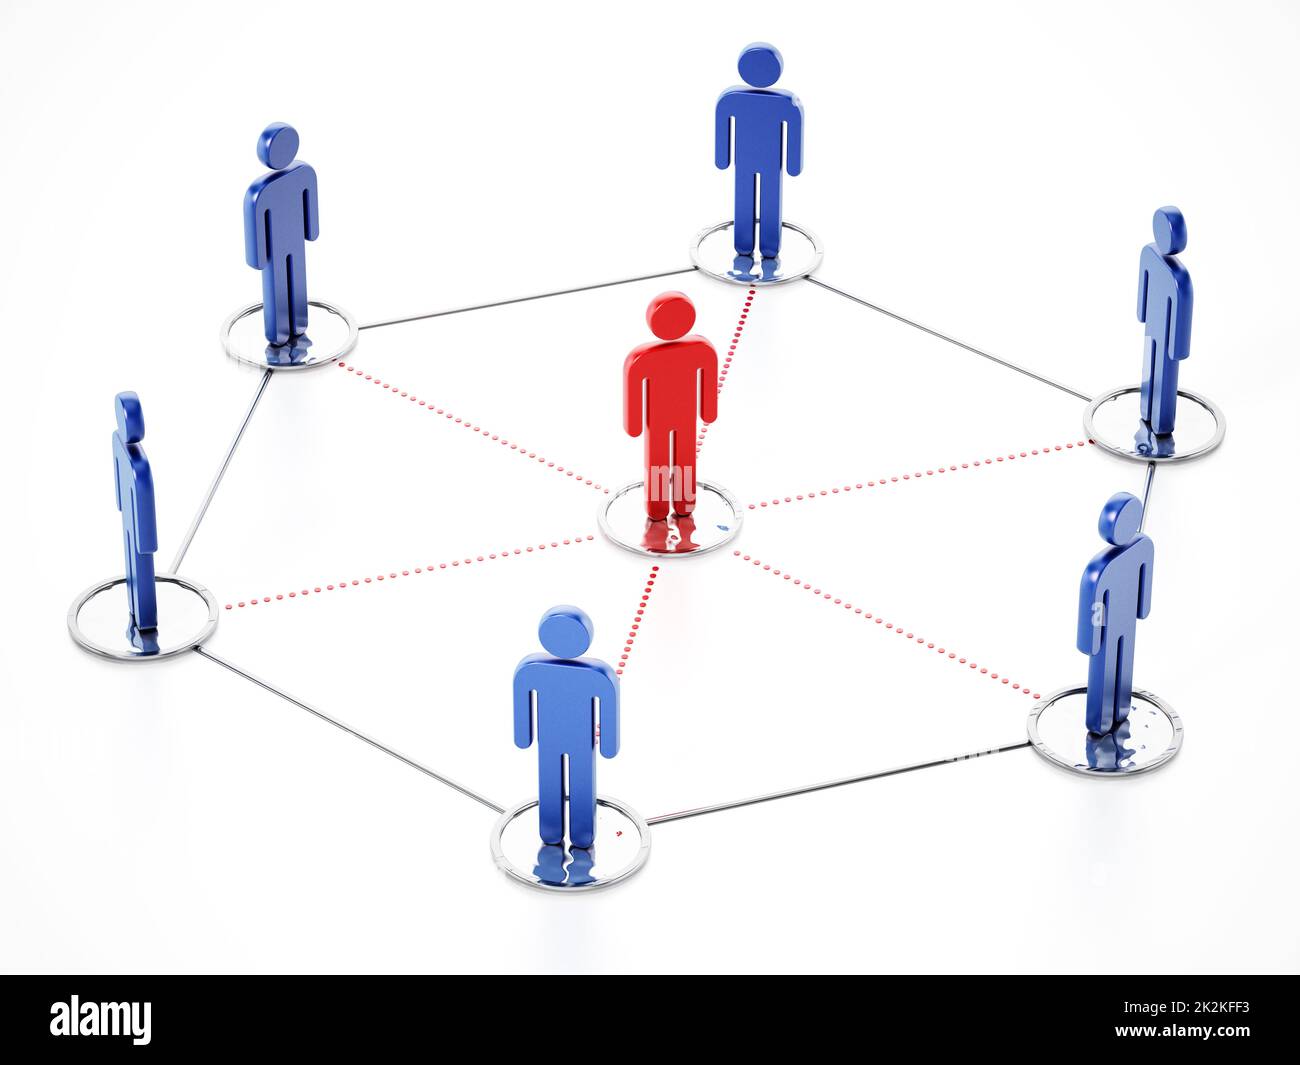 Des personnes connectées avec une figure de proue au centre. 3D illustration Banque D'Images